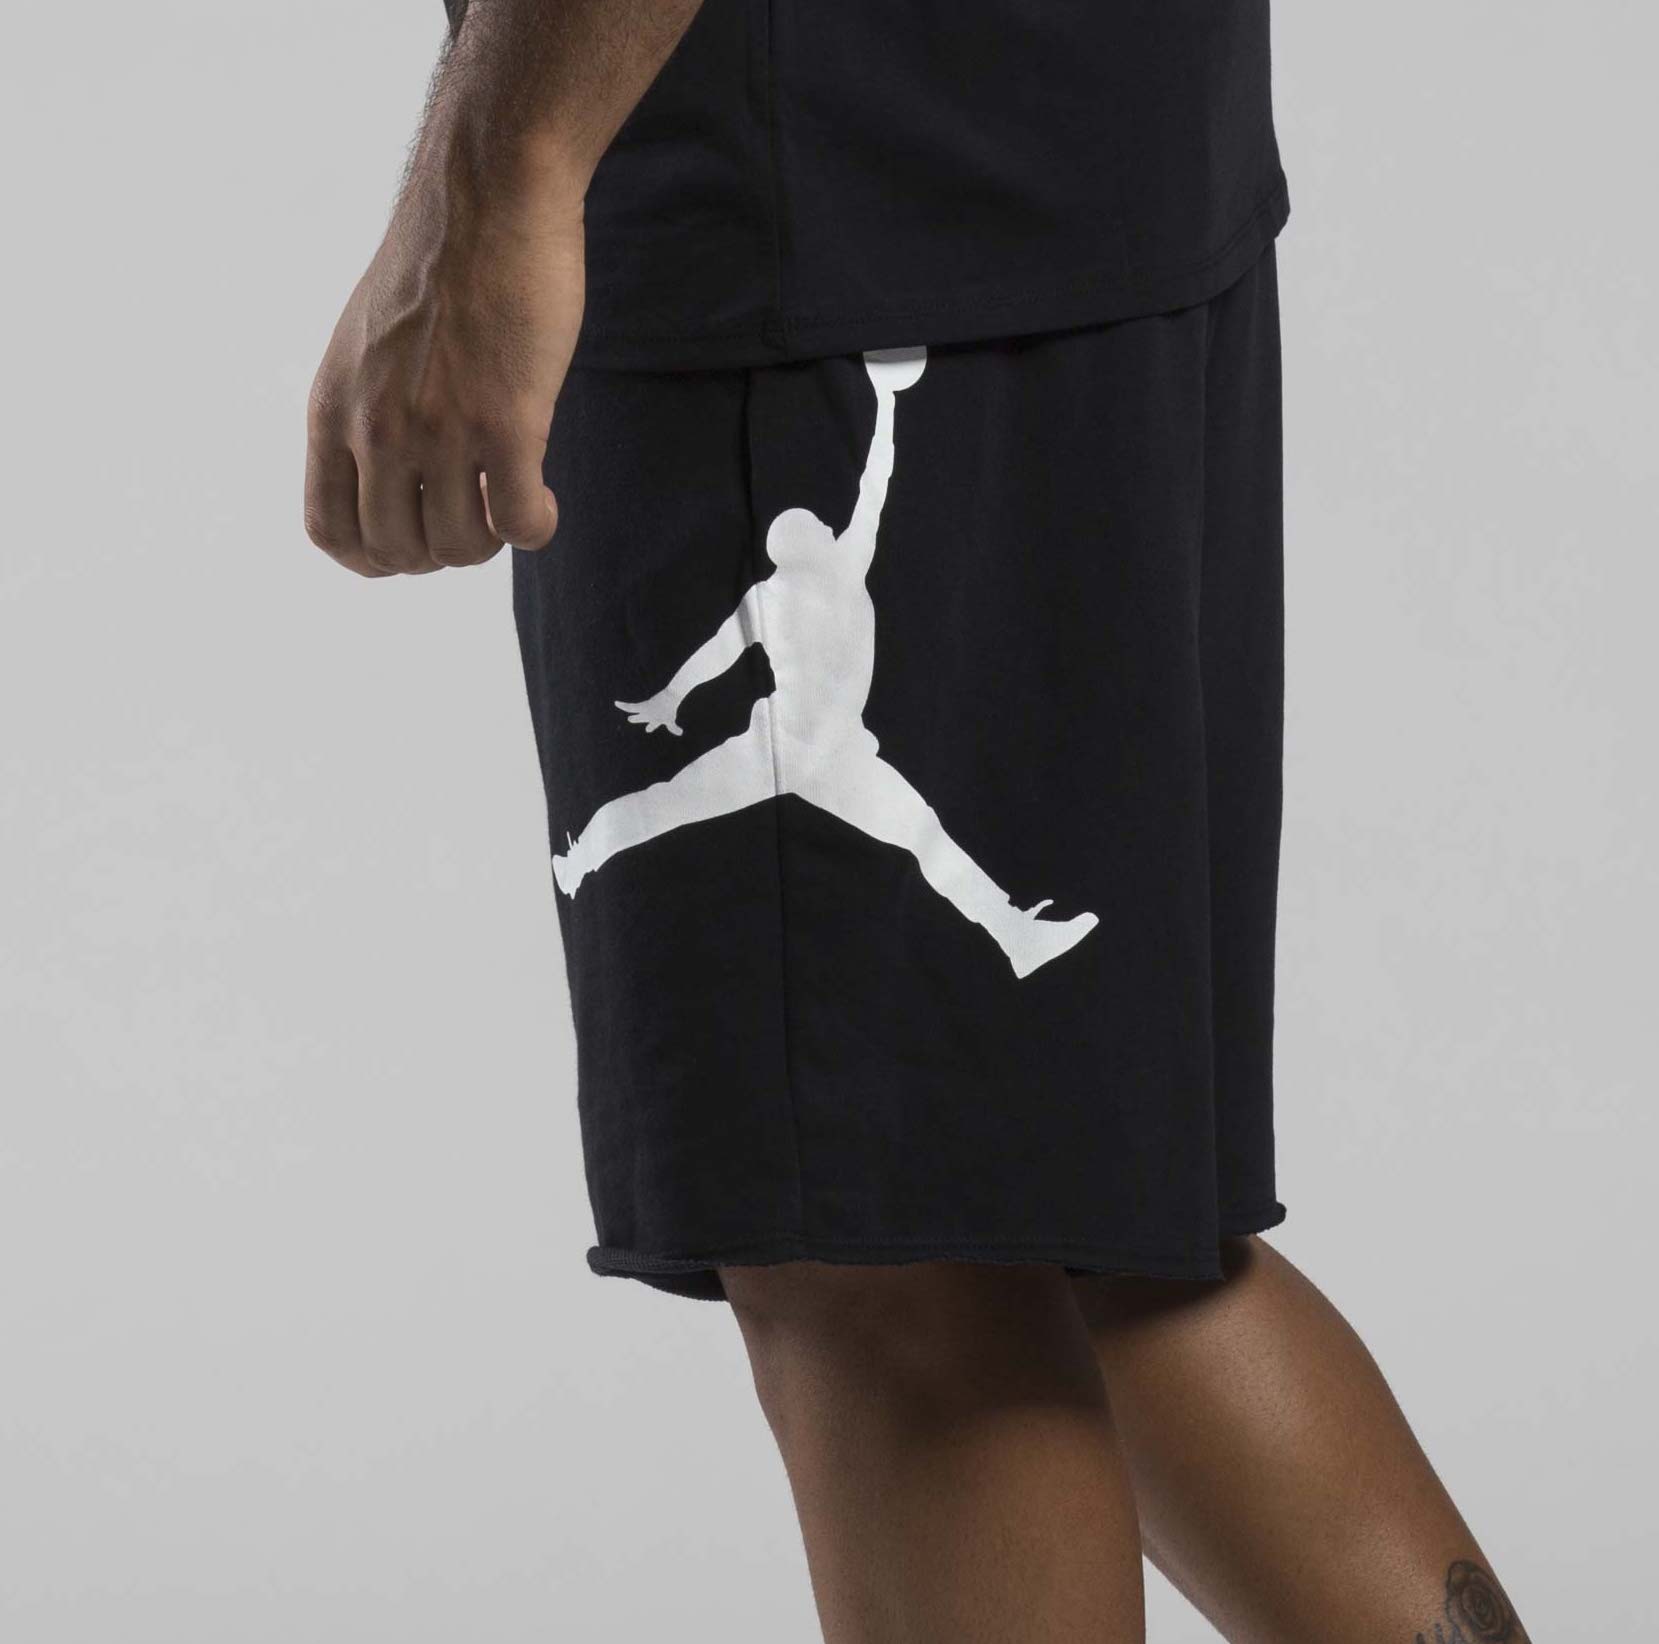 73% OFF the Air Jordan Logo Fleece Shorts in Black — Sneaker Shouts